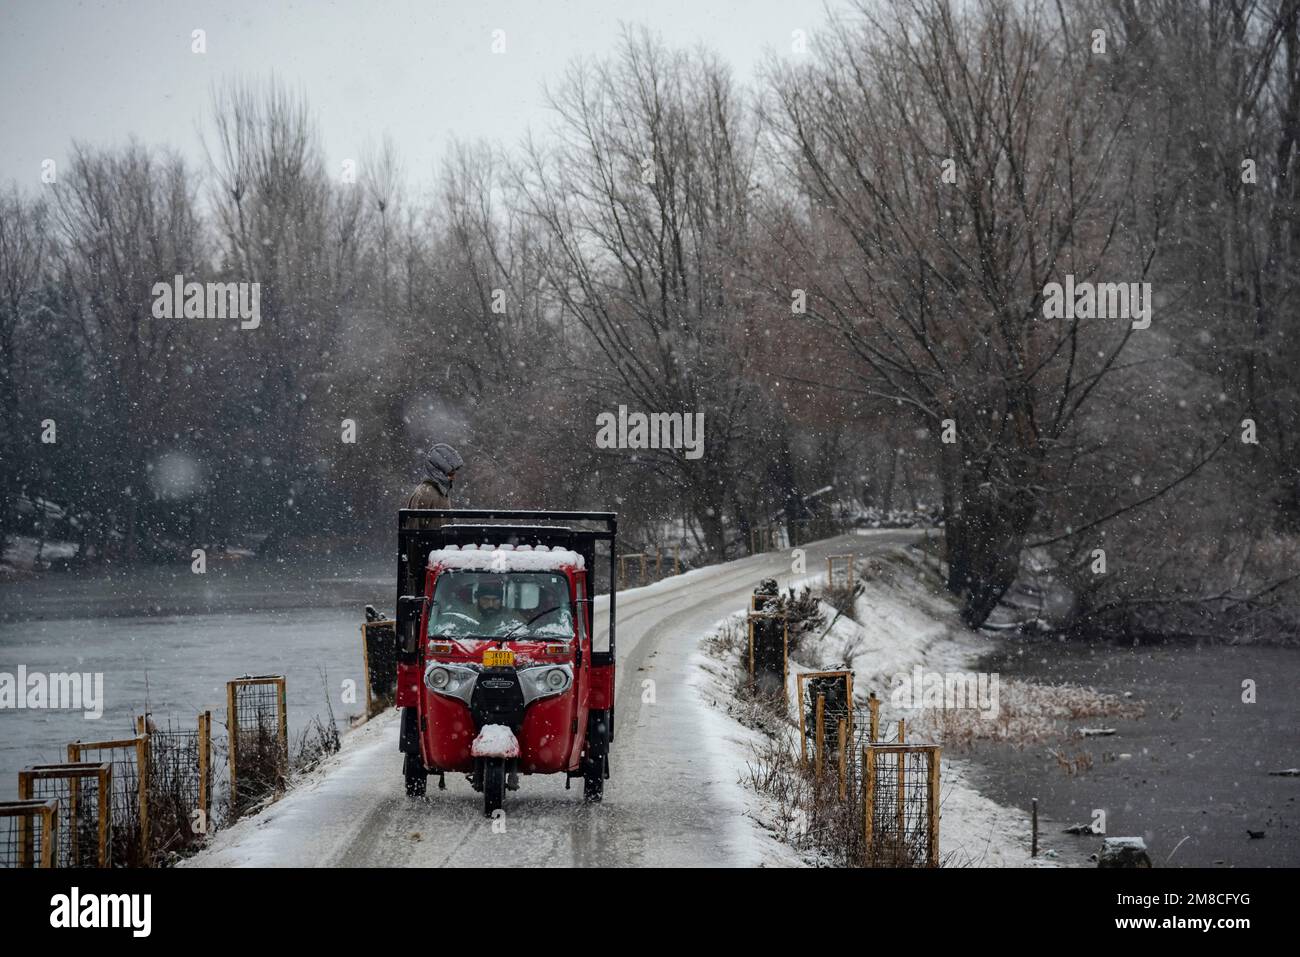 Un veicolo percorre una strada innevata tra le nevicate. Il Kashmir ha ricevuto nevicate fresche, con le cali più alte della valle che hanno ricevuto nevicate da moderate a pesanti e nevicate da leggere a moderate in pianura, causando una visibilità distruttiva. Questo ha influito sulle operazioni di volo insieme alla chiusura dell'autostrada nazionale Srinagar-Jammu. Foto Stock